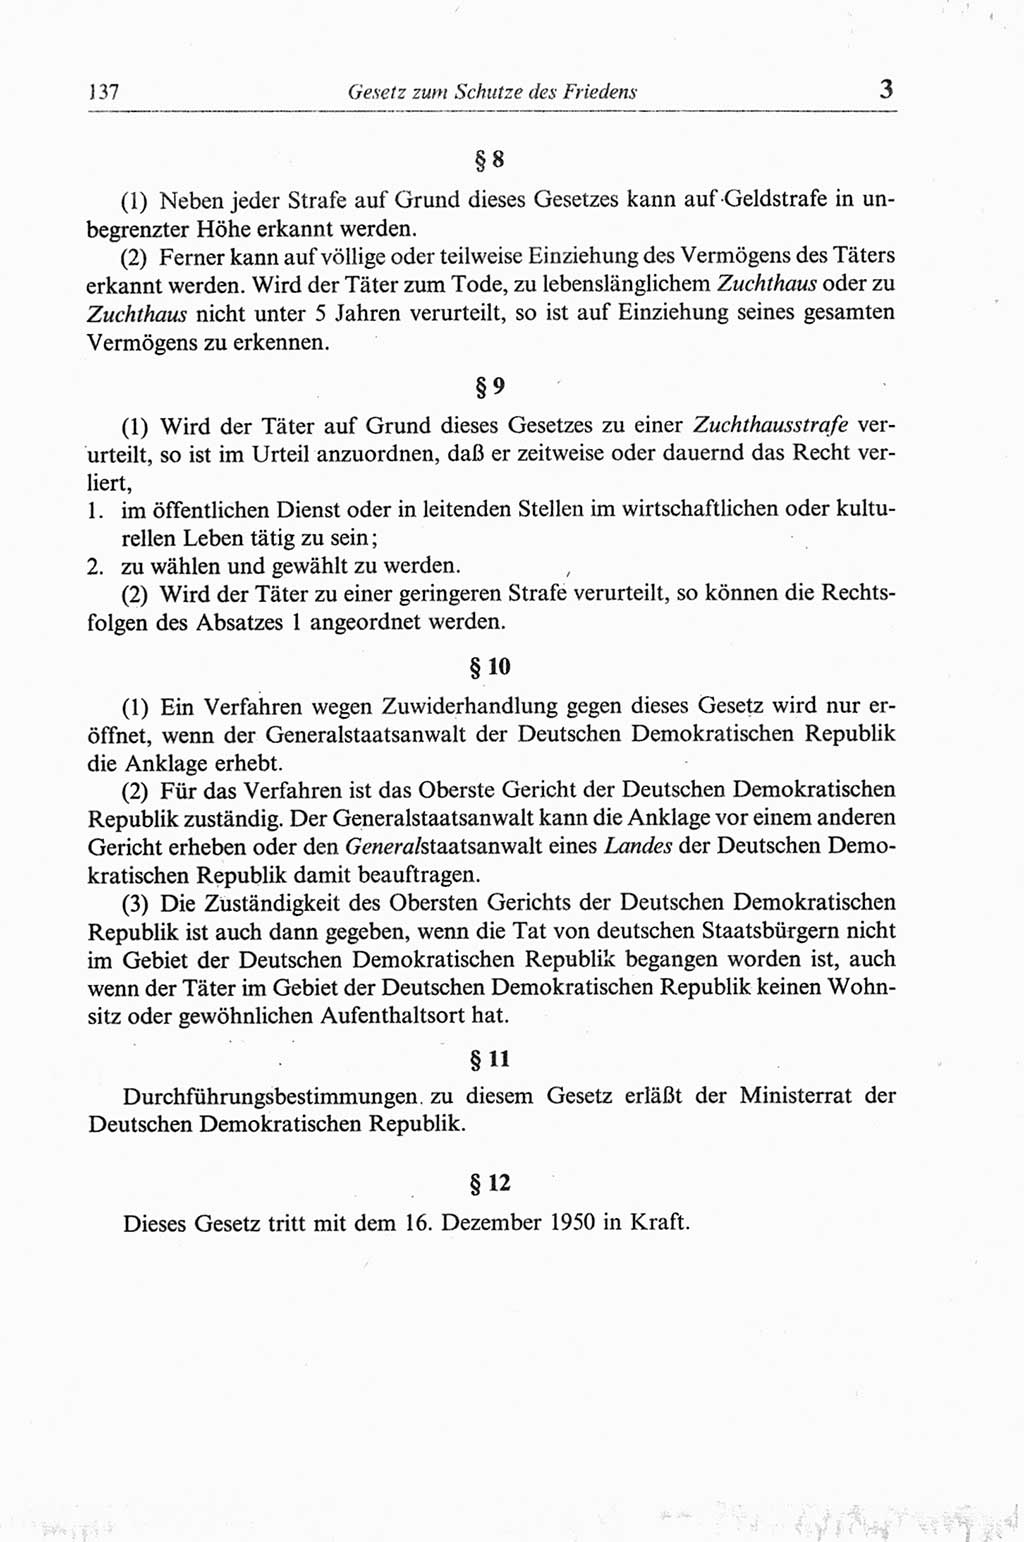 Strafgesetzbuch (StGB) der Deutschen Demokratischen Republik (DDR) und angrenzende Gesetze und Bestimmungen 1968, Seite 137 (StGB Ges. Best. DDR 1968, S. 137)